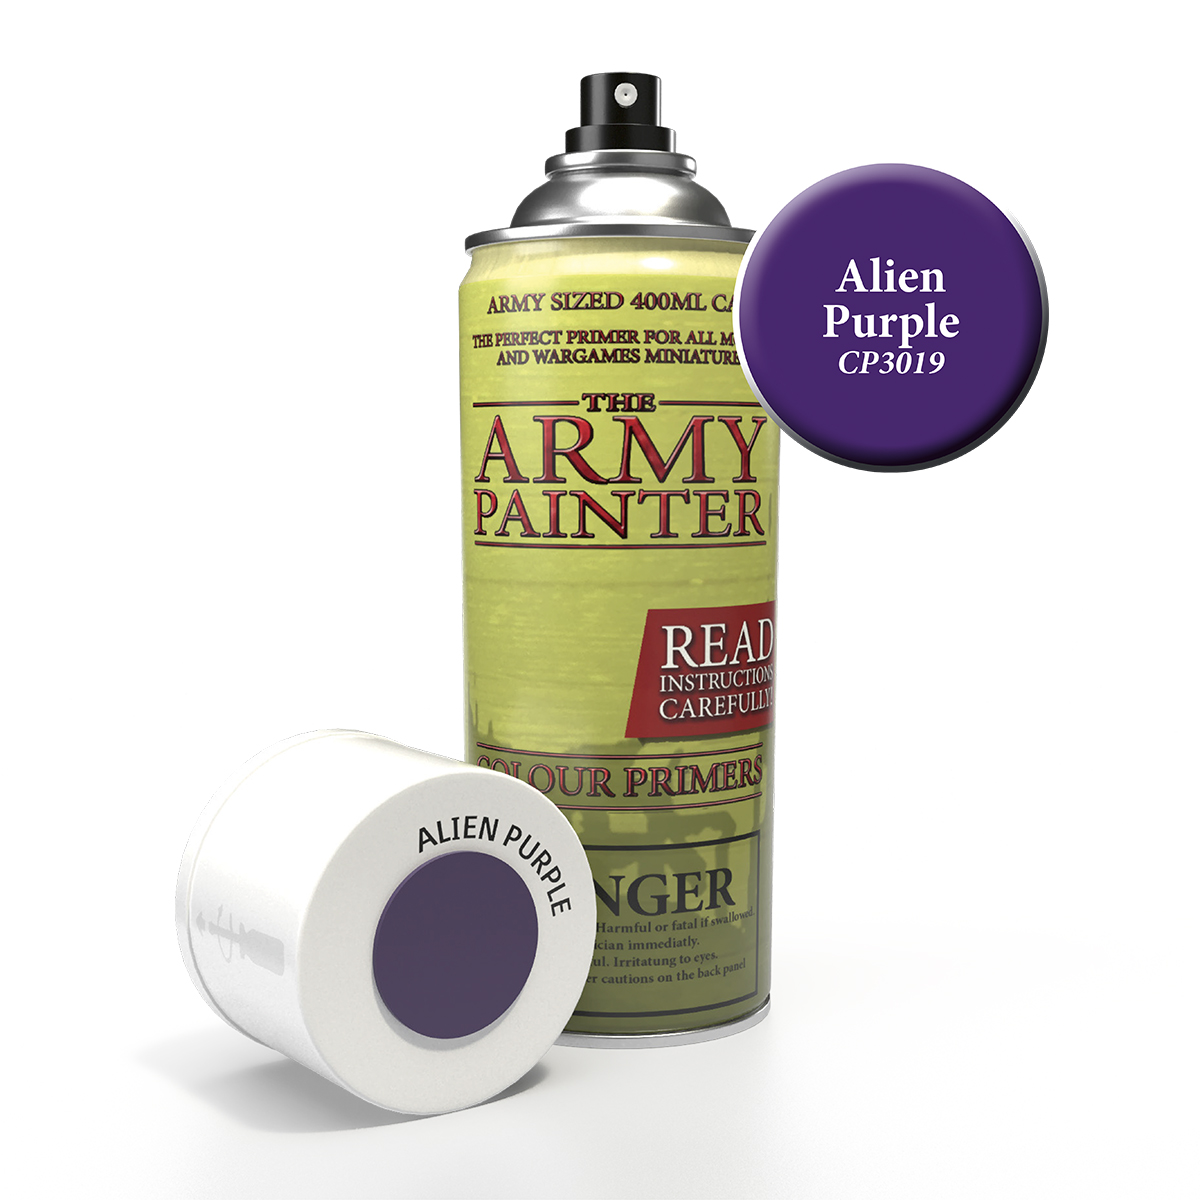 ArmyPainter Colorspray Alien Purple